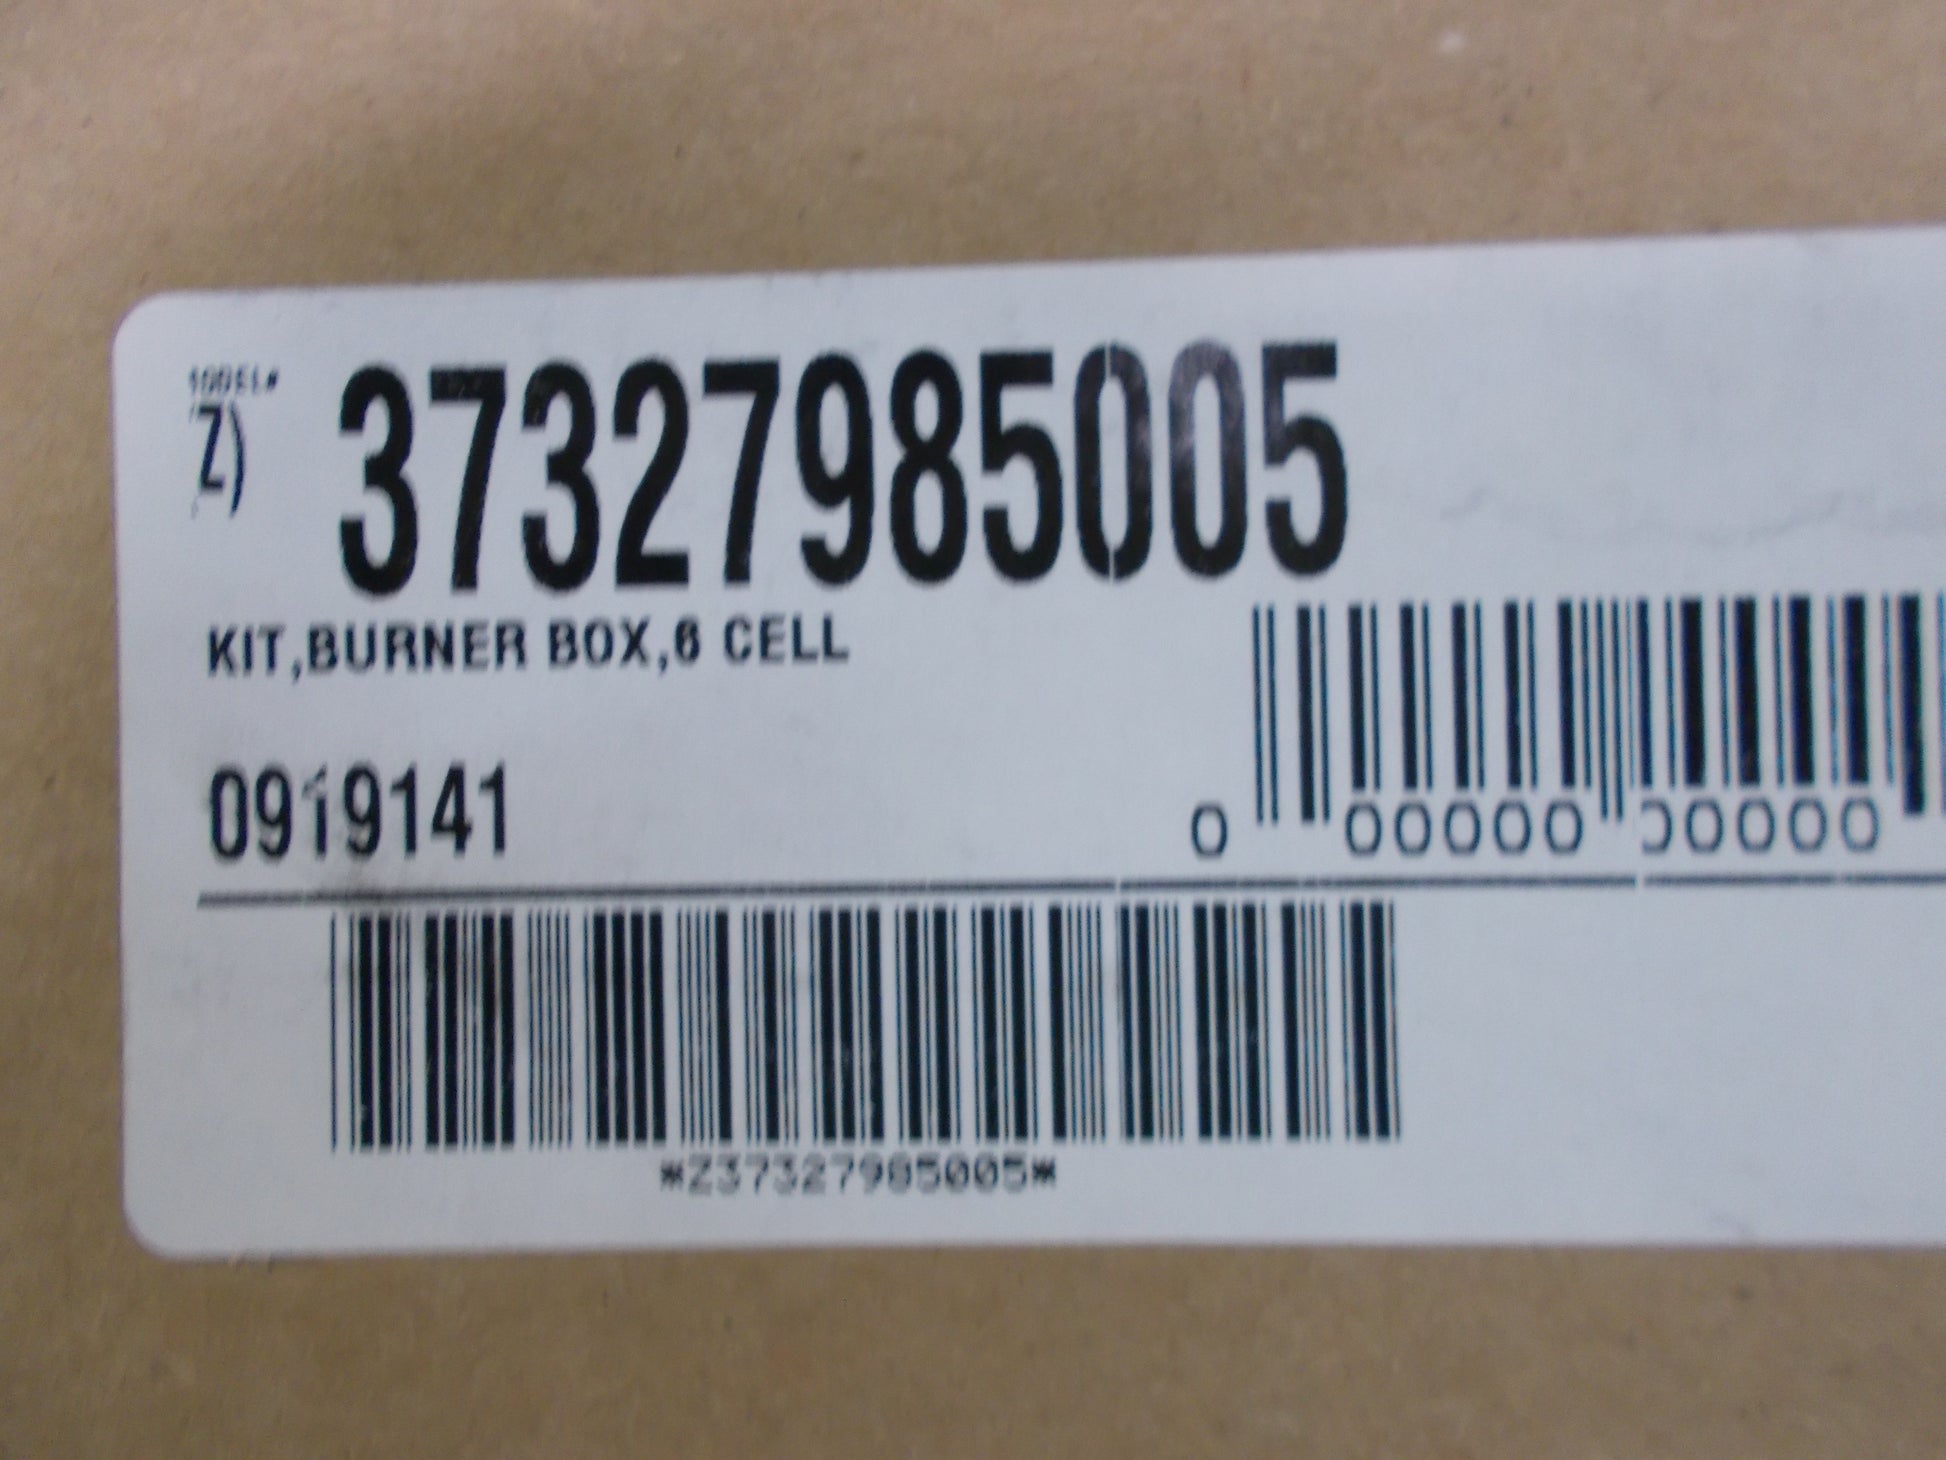 BURNER BOX KIT 6 CELL